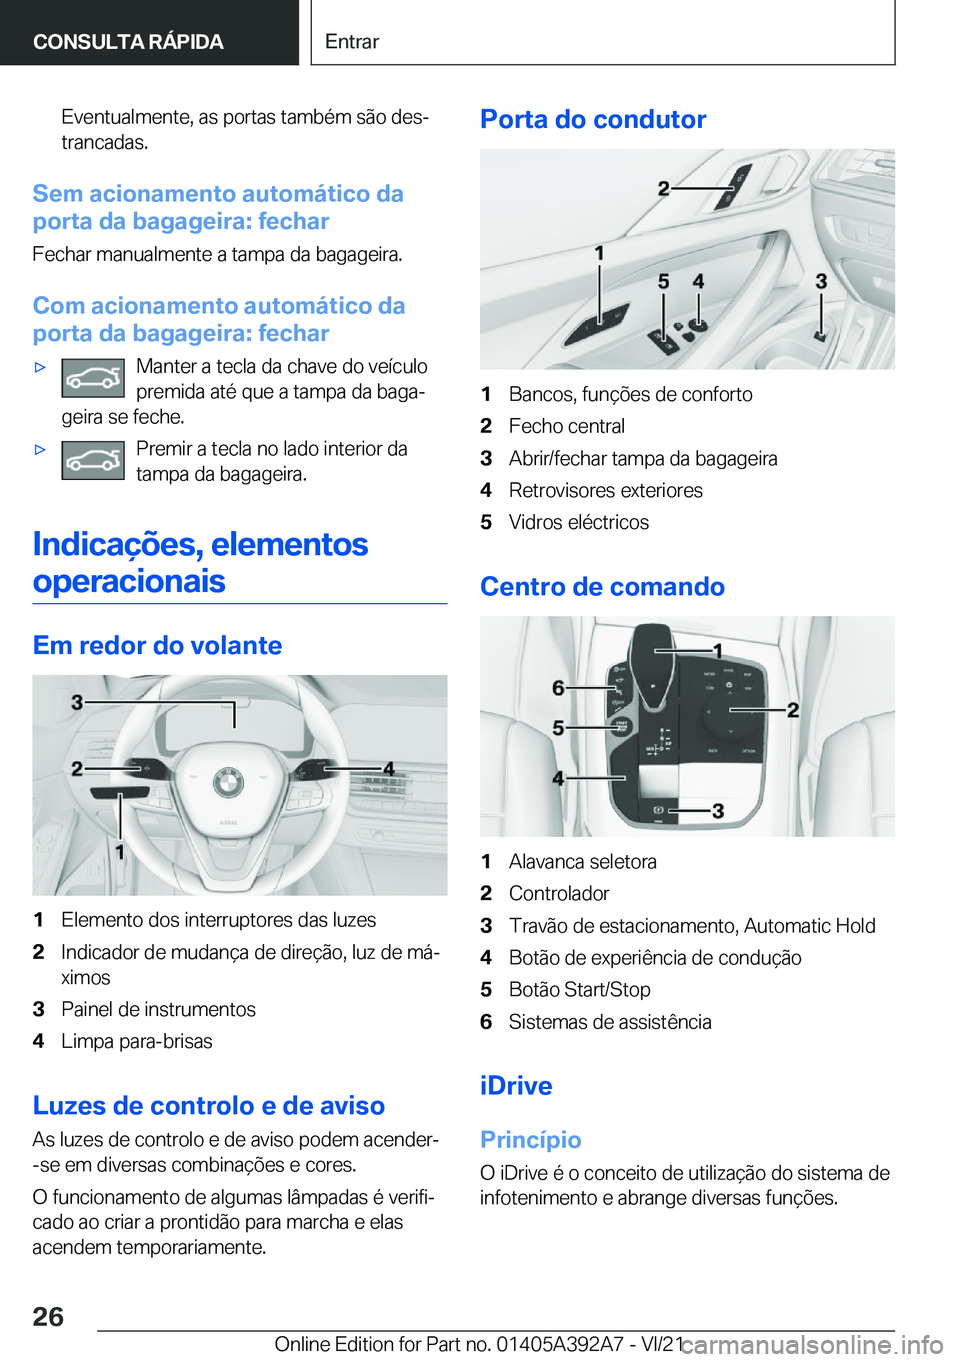 BMW 4 SERIES 2022  Manual do condutor (in Portuguese) �E�v�e�n�t�u�a�l�m�e�n�t�e�,��a�s��p�o�r�t�a�s��t�a�m�b�é�m��s�ã�o��d�e�sª�t�r�a�n�c�a�d�a�s�.
�S�e�m��a�c�i�o�n�a�m�e�n�t�o��a�u�t�o�m�á�t�i�c�o��d�a
�p�o�r�t�a��d�a��b�a�g�a�g�e�i�r�a